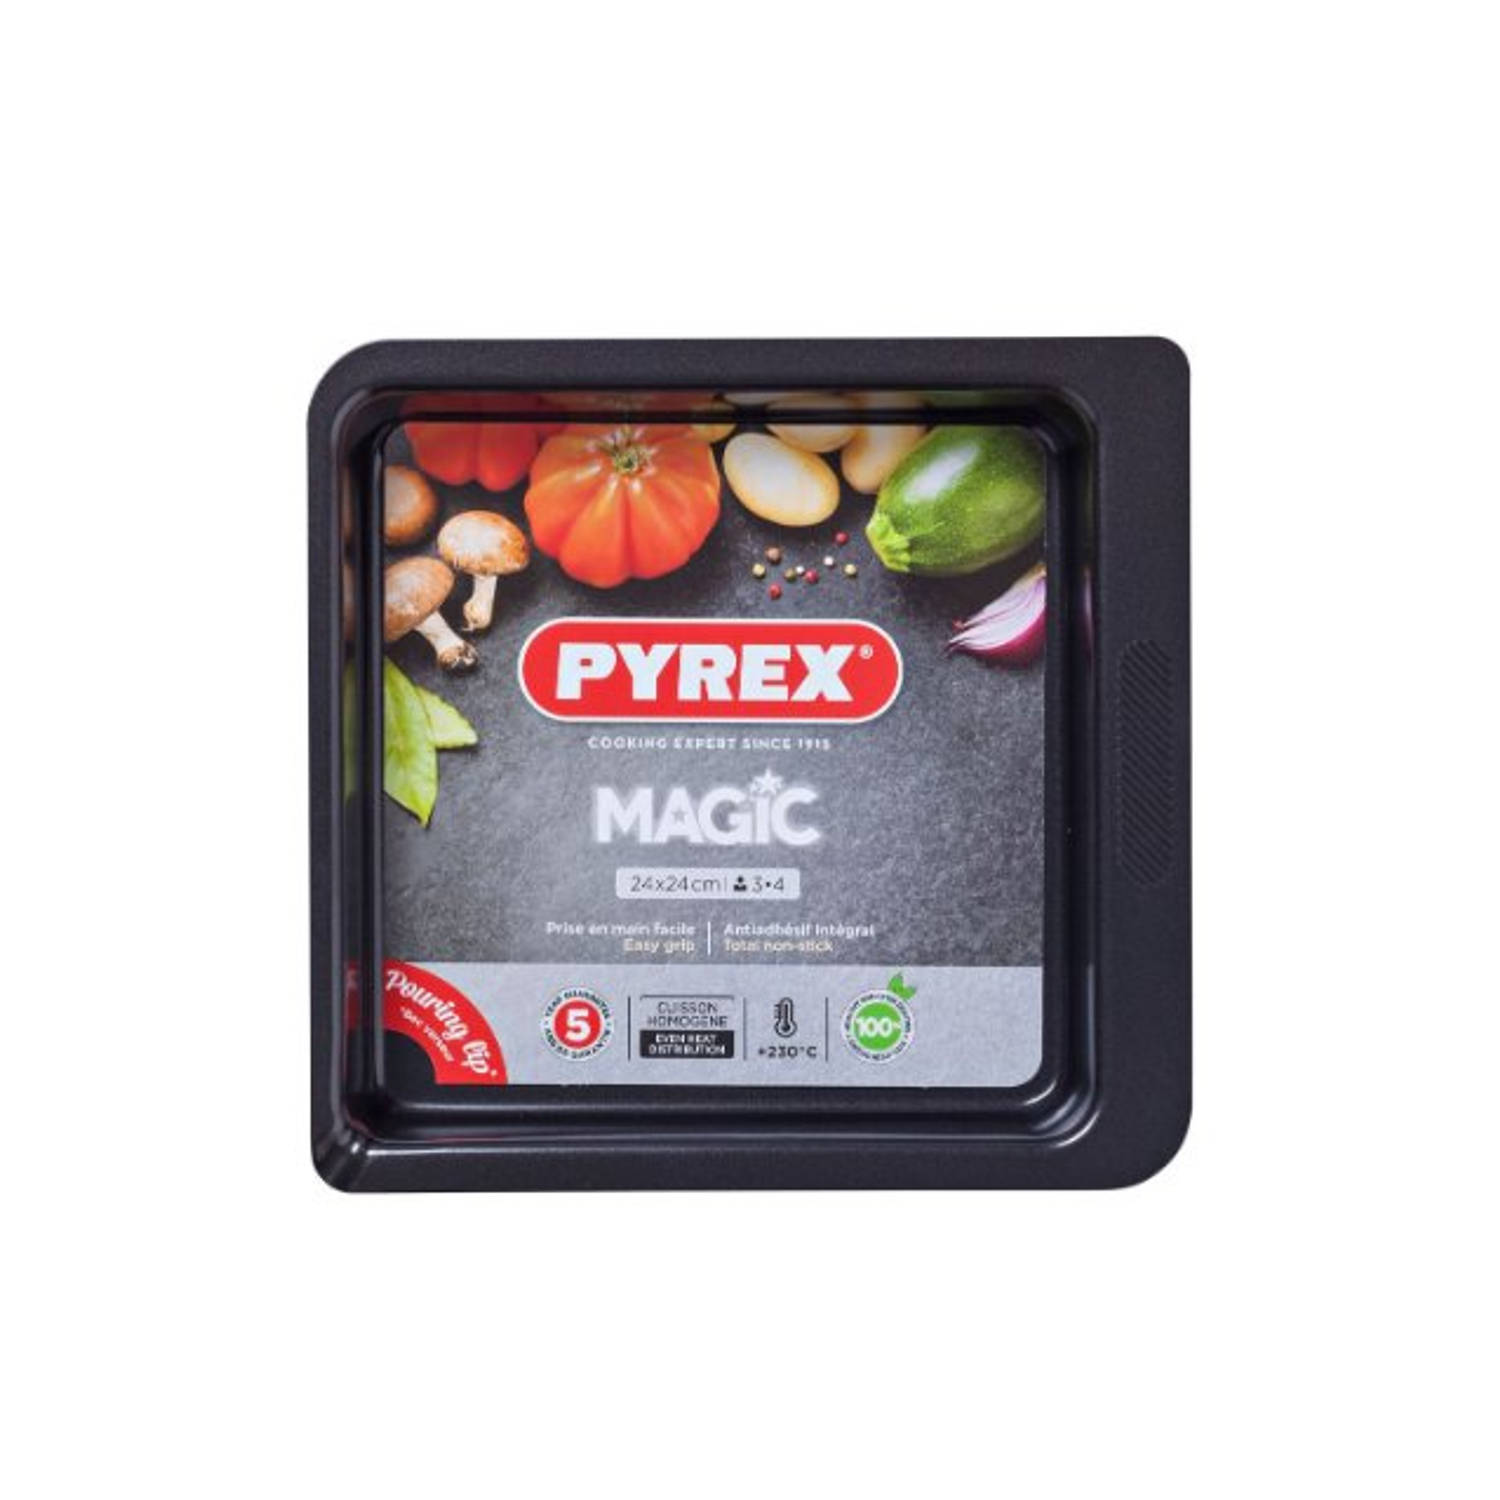 Pyrex Magic Vierkante Ovenschaal Van Metaal 24 Cm